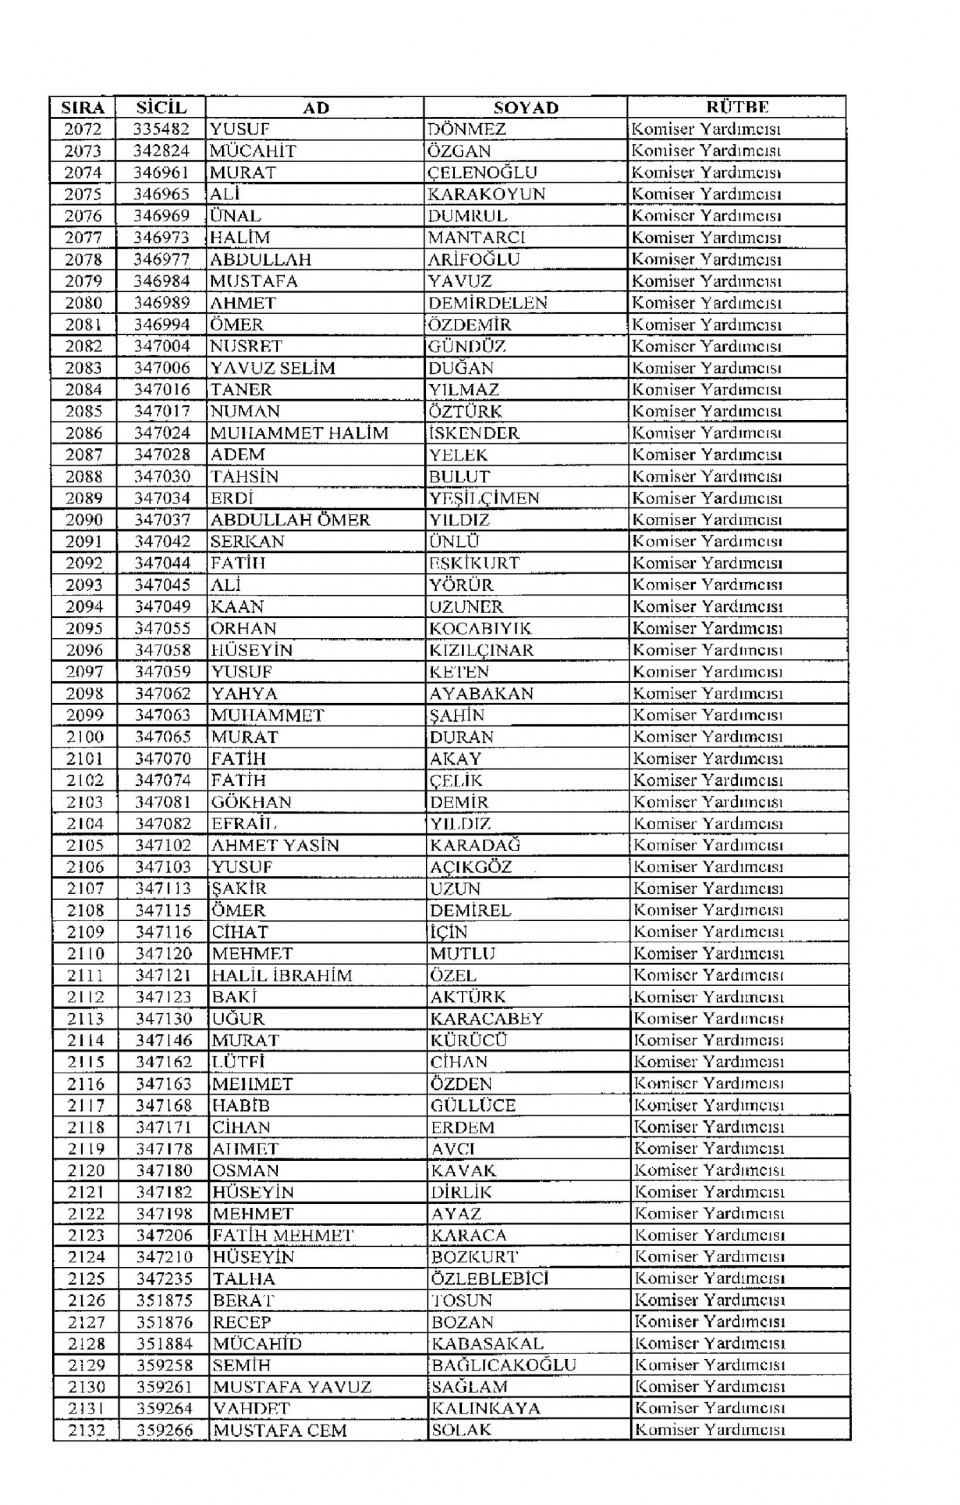 Kamudan ihraç edilenlerin isim isim listesi 86